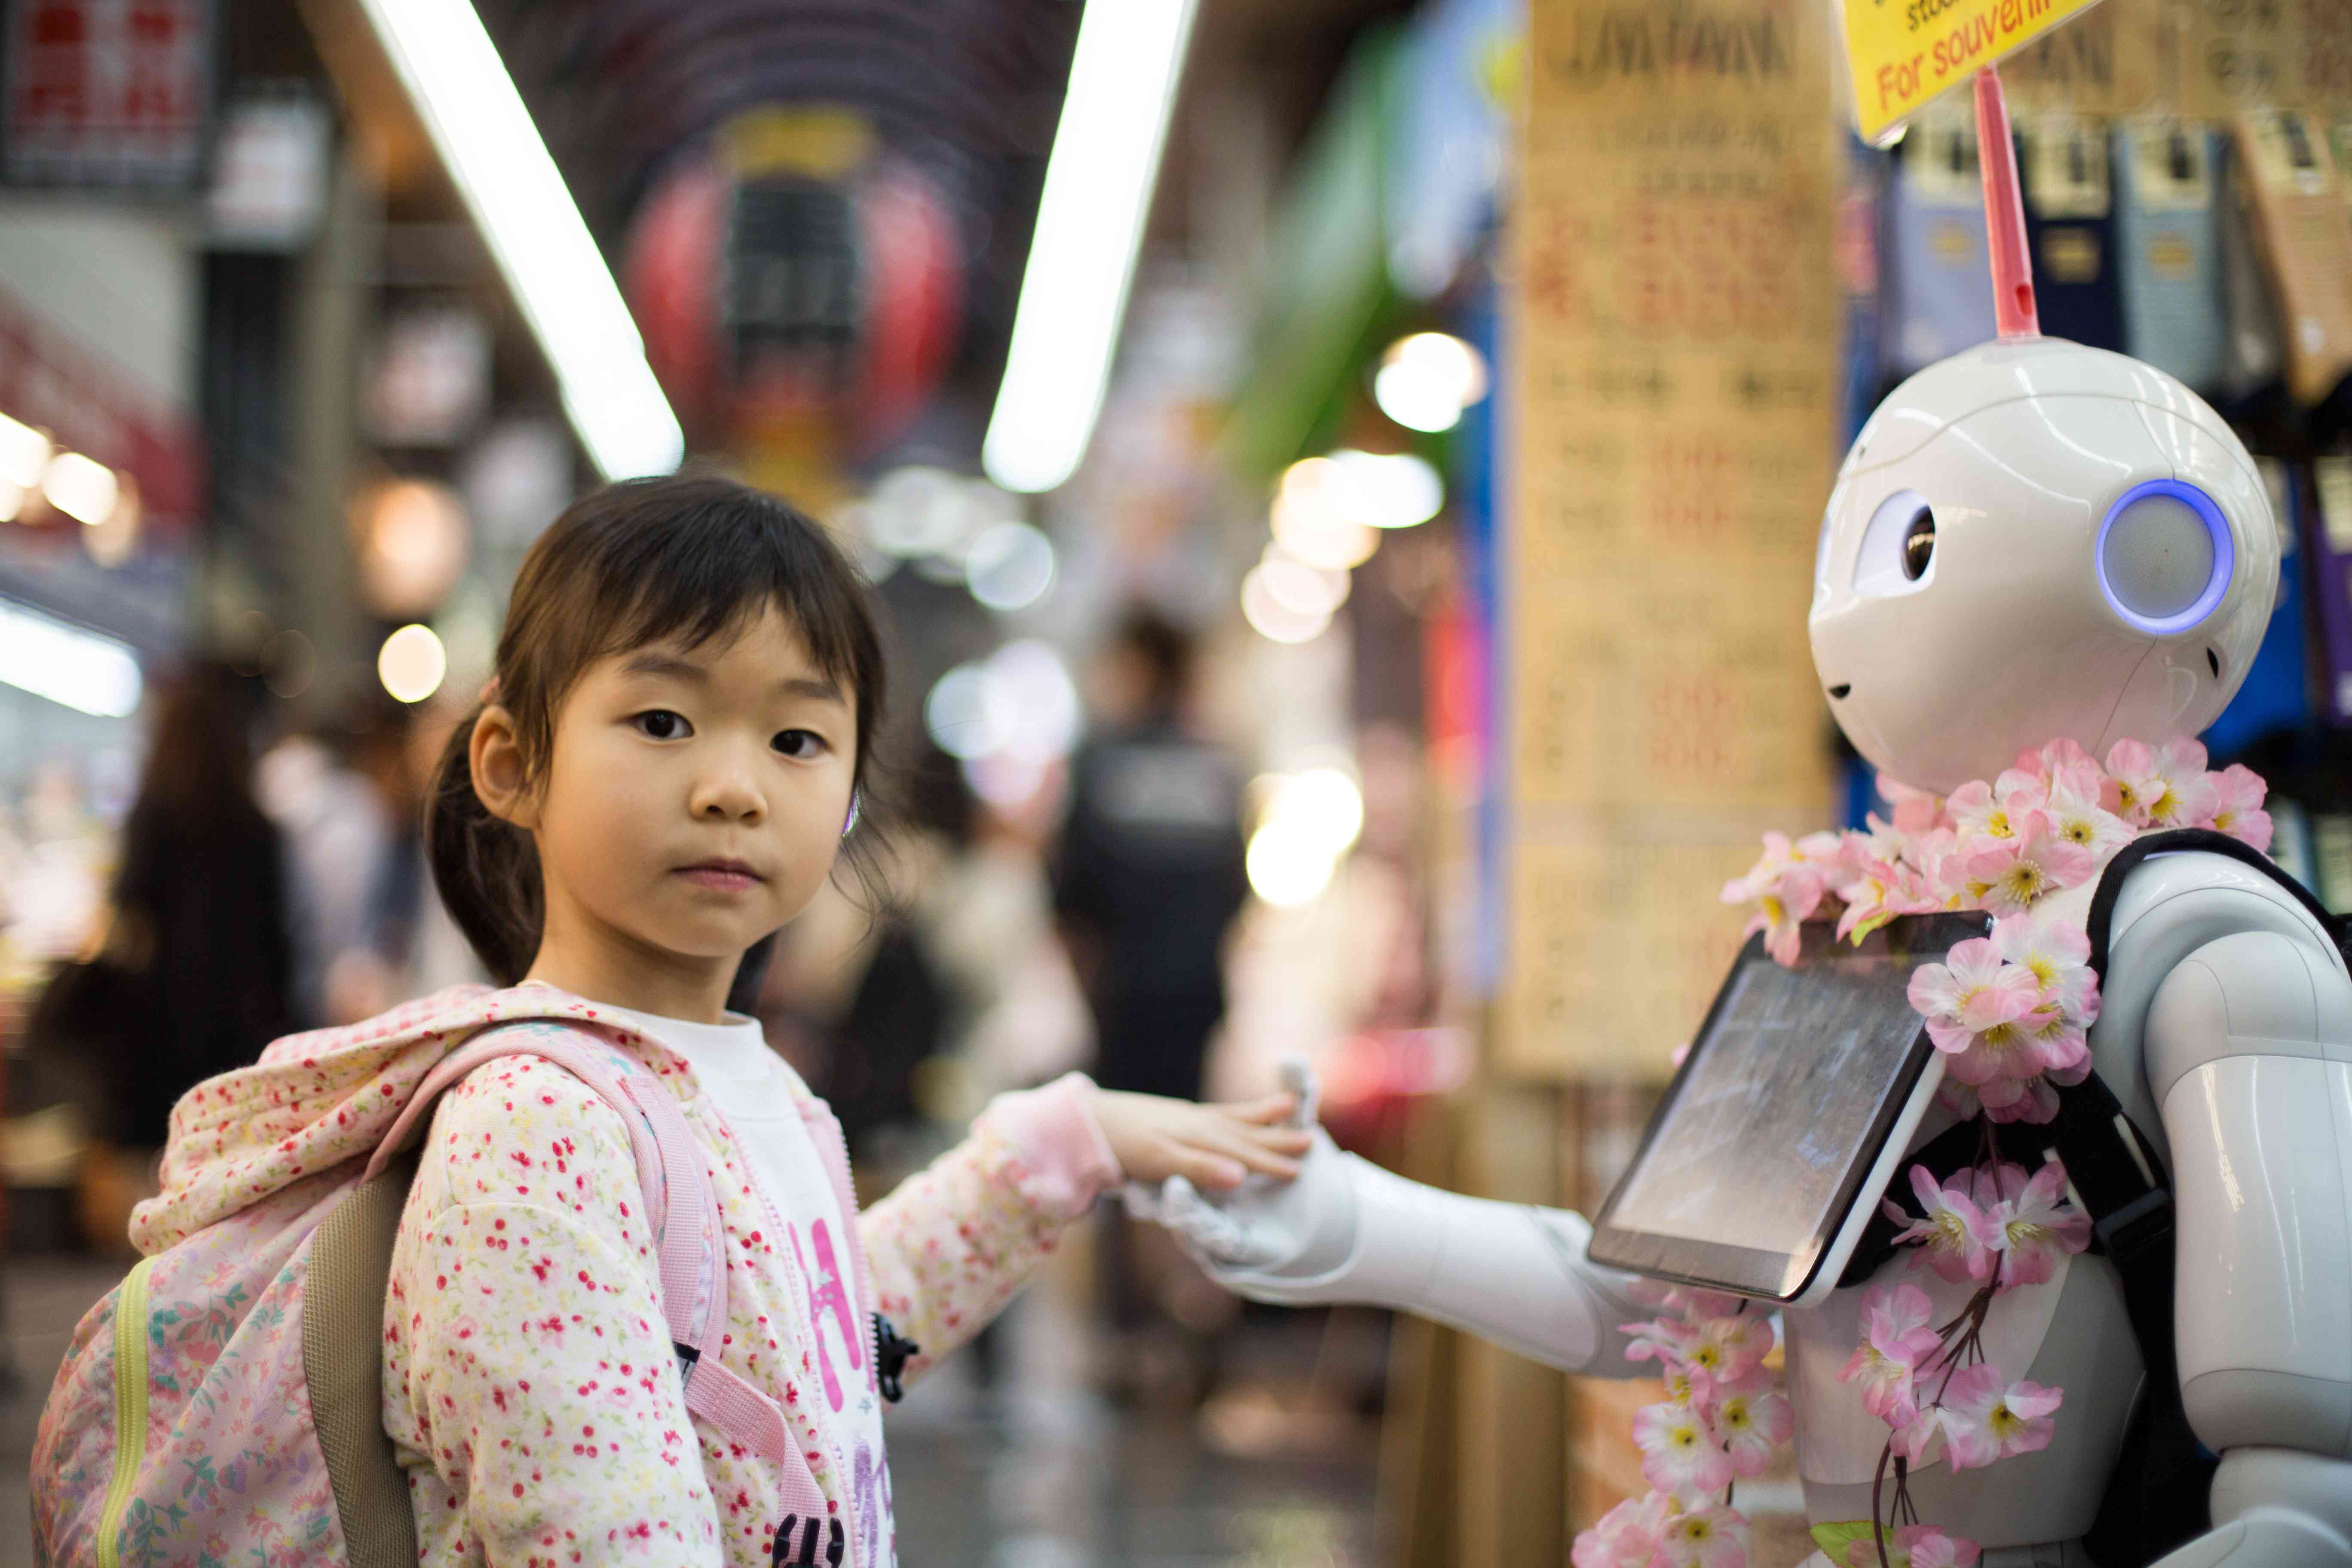 Een kind dat de hand van een robot vasthoudt op een drukke markt.